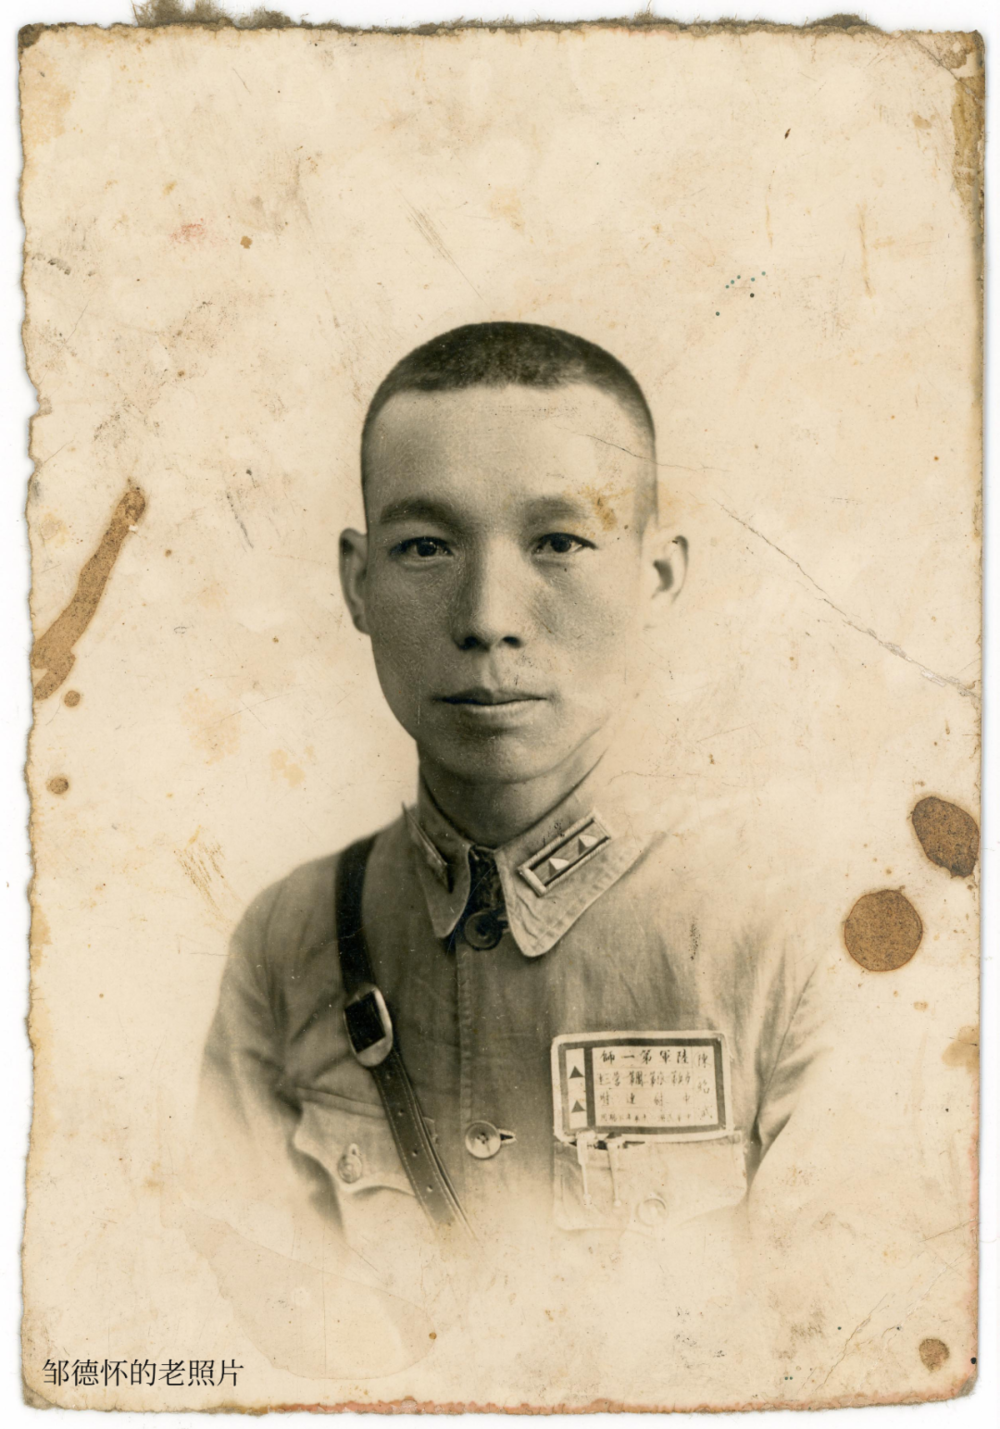 中国陆军第一师军官陈绍武，他在这张照片背面写上了那份遗书<br>